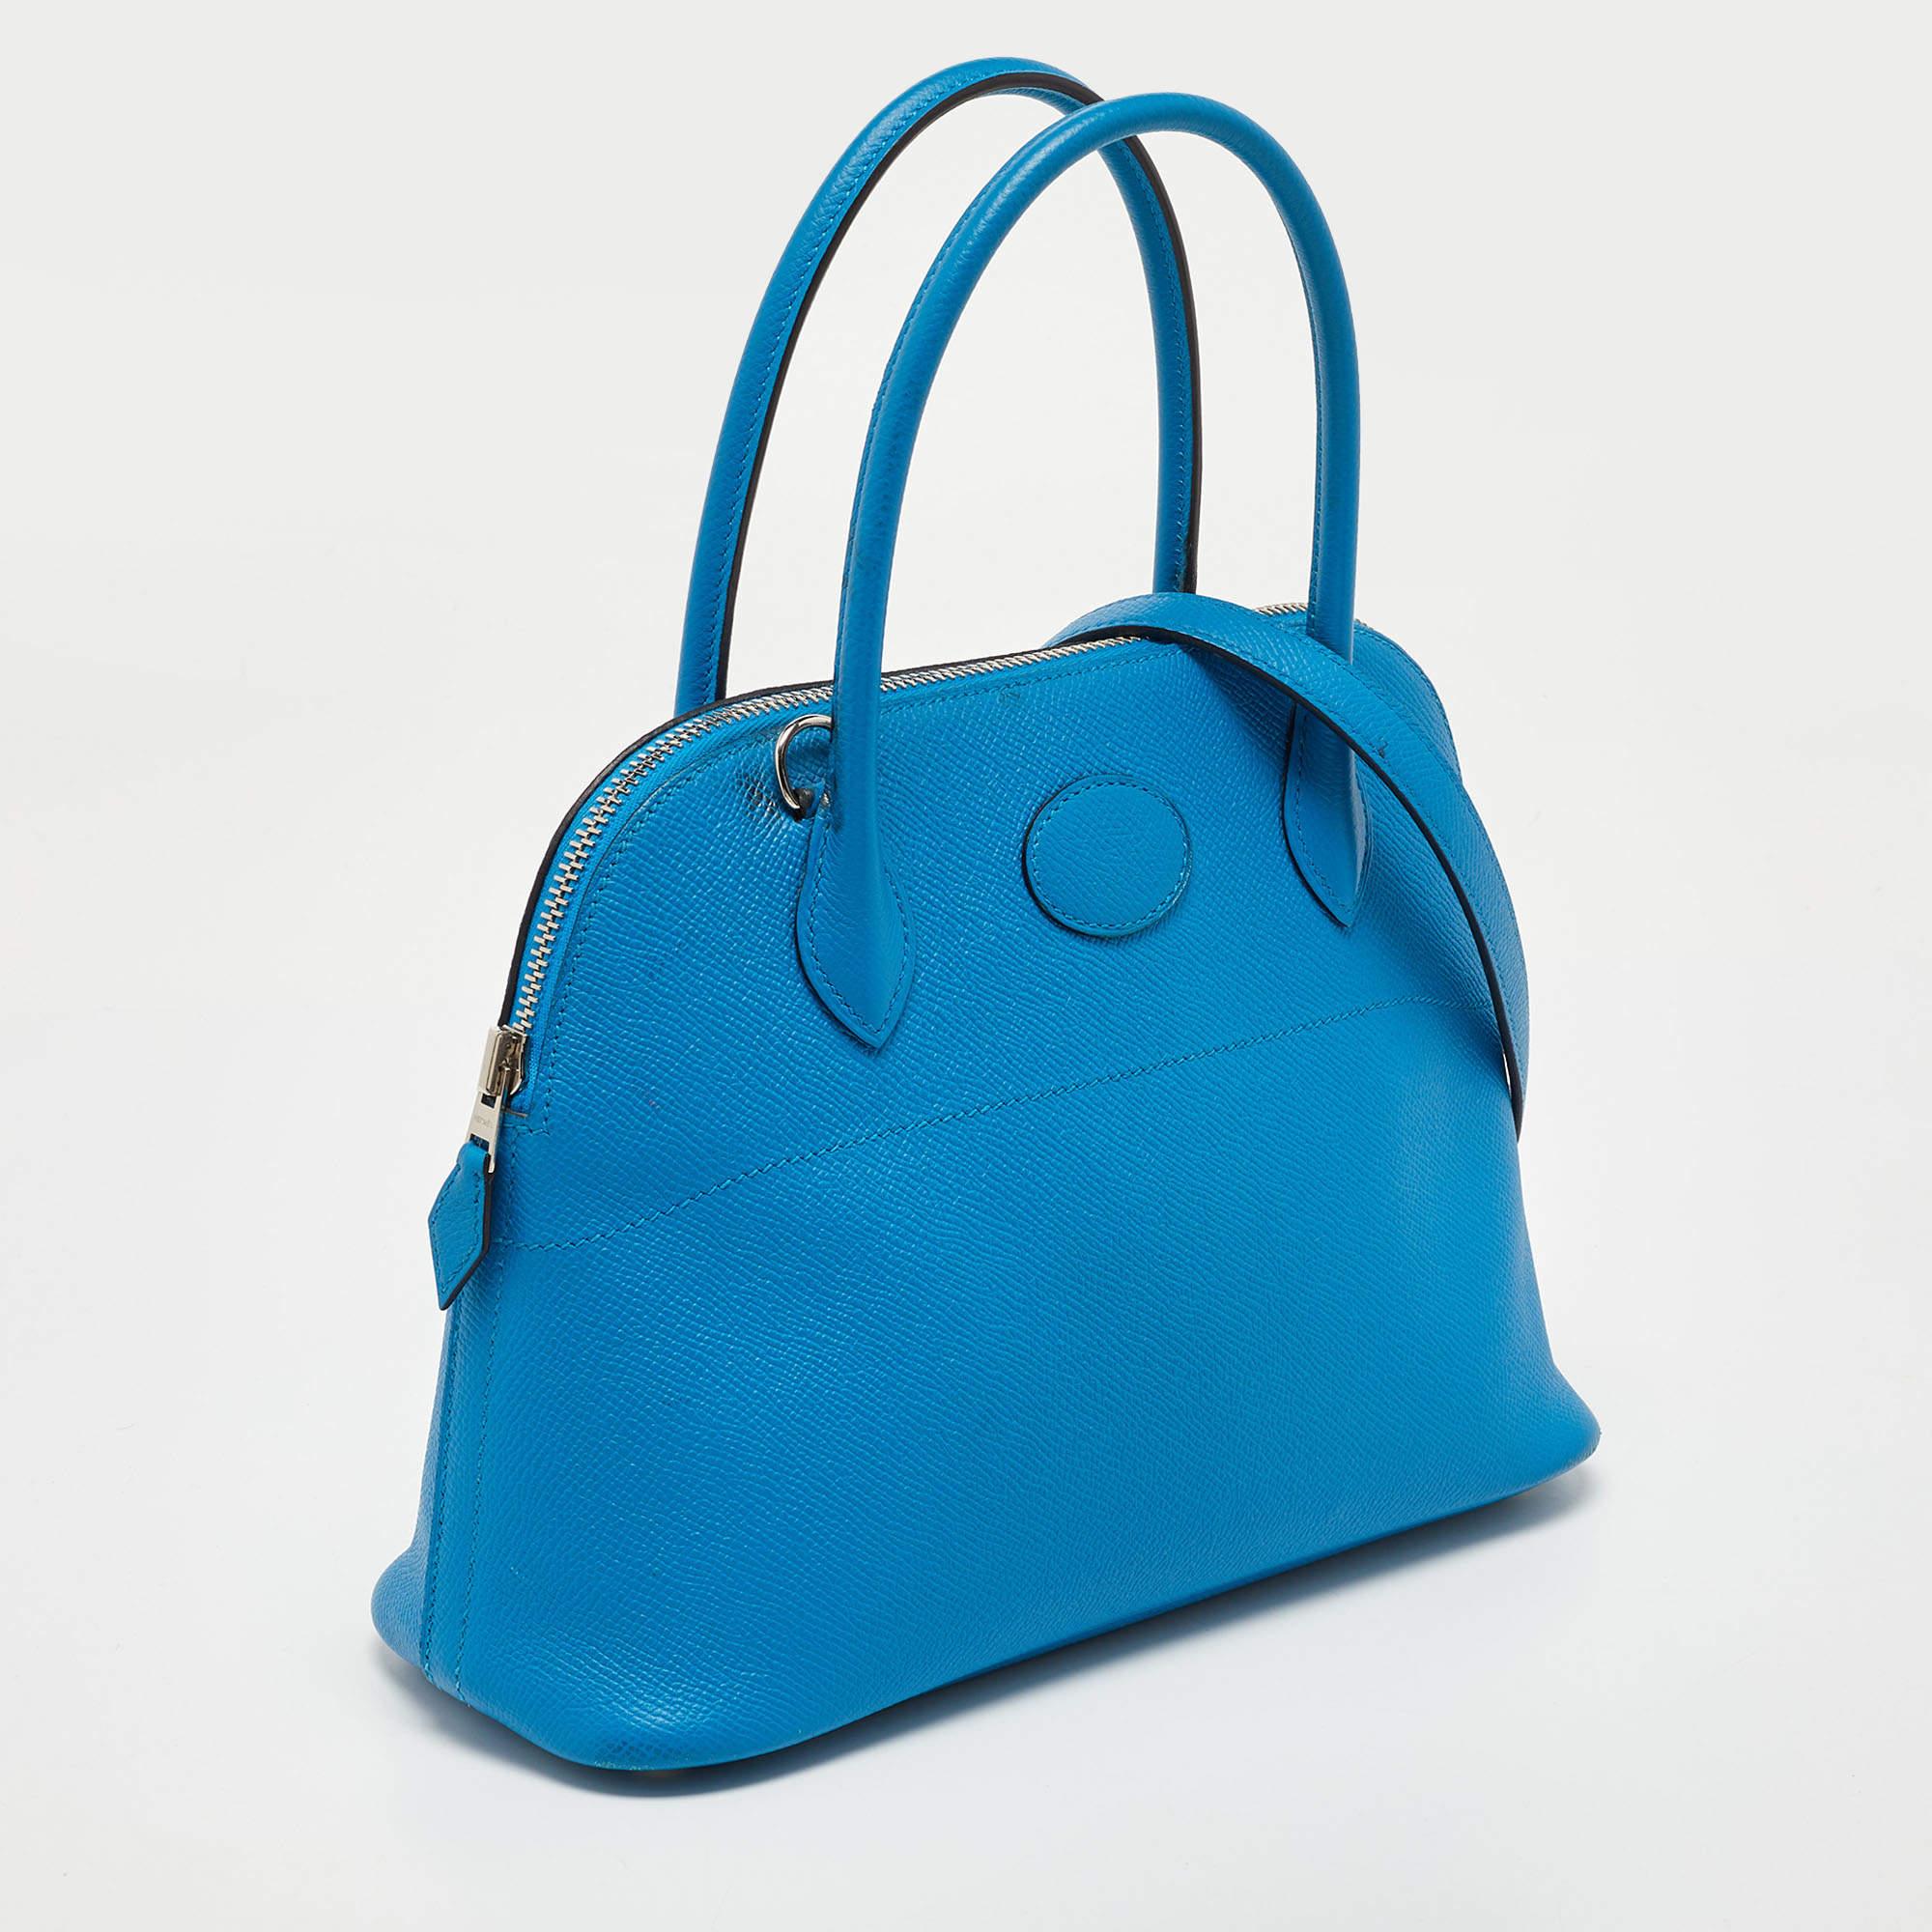 Luxueusement confectionné par les experts d'Hermès, ce superbe sac Bolide 27 est un accessoire indispensable pour les amoureux de la mode. Apt à porter tous les jours, il est la combinaison parfaite de la sophistication et de la praticité. Fabriqué